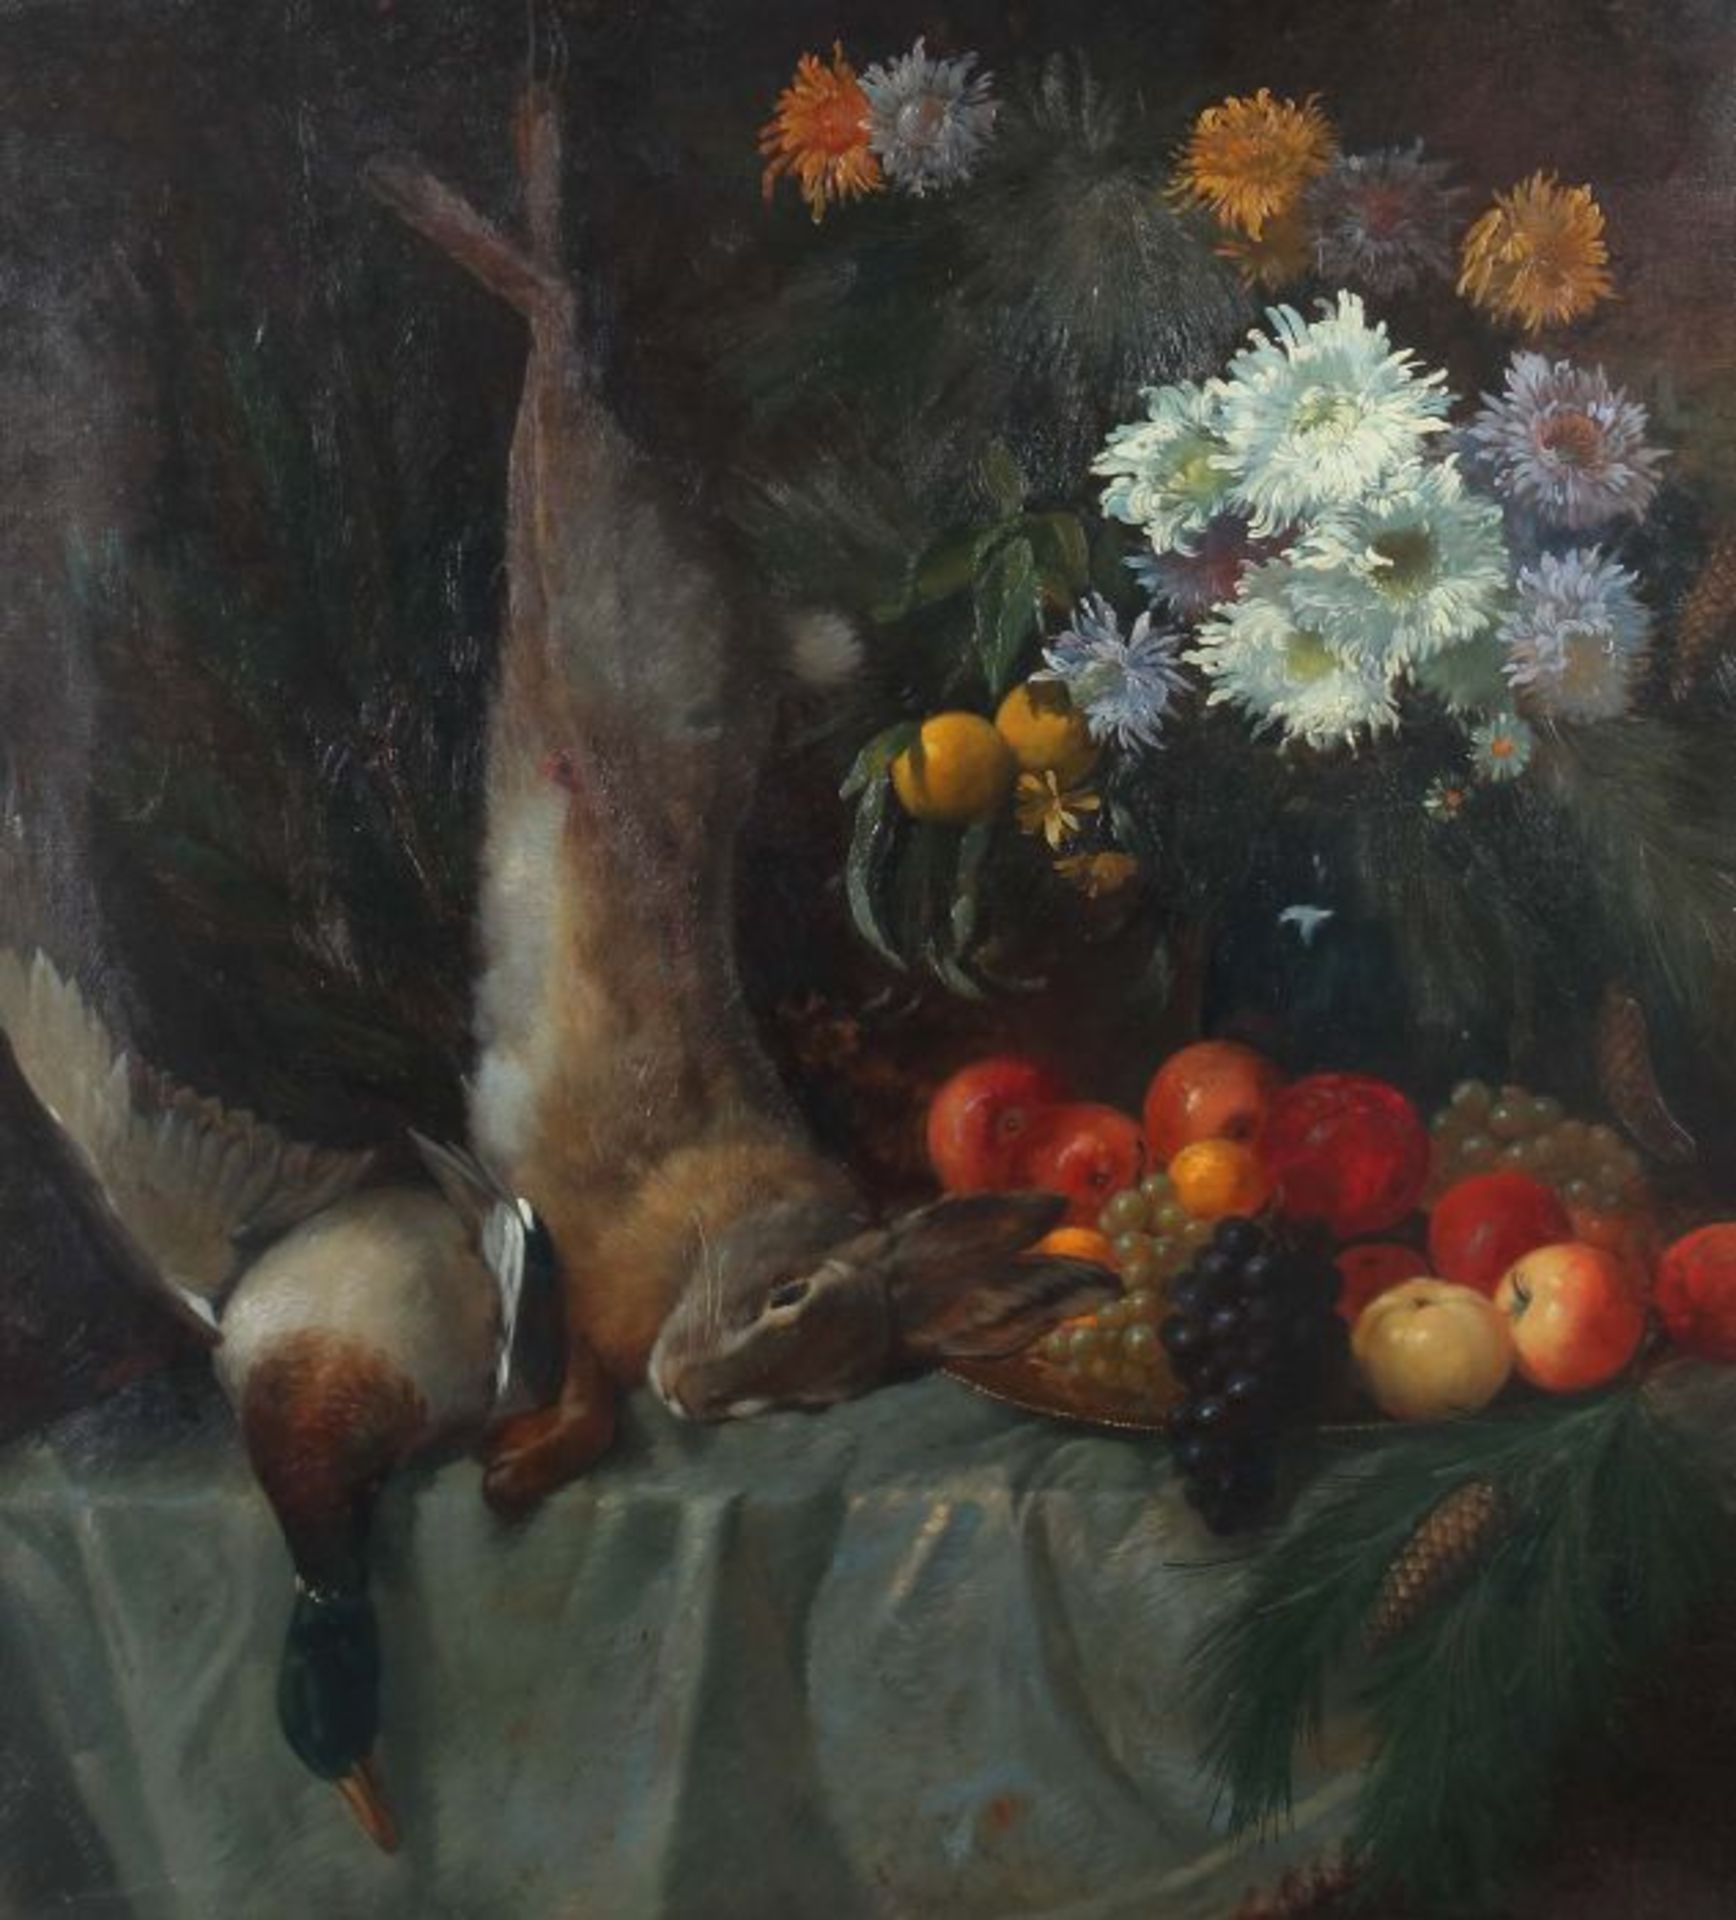 Schulze, Hans Rudolf1870 - 1951, deutscher Maler. "Jagdstillleben", erlegter Hase und Ente, neben